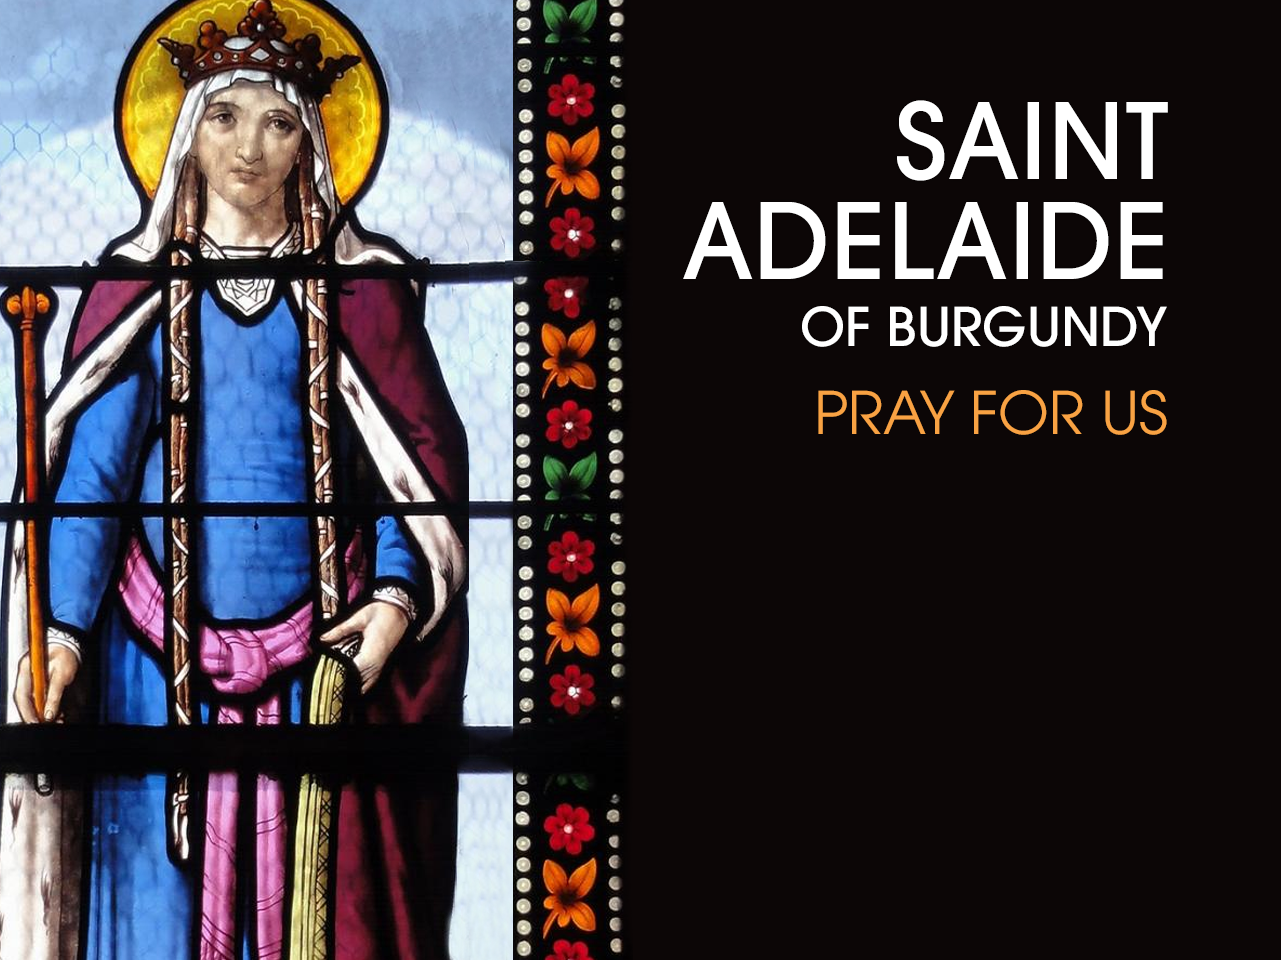 St. Adelaide of Burgundy